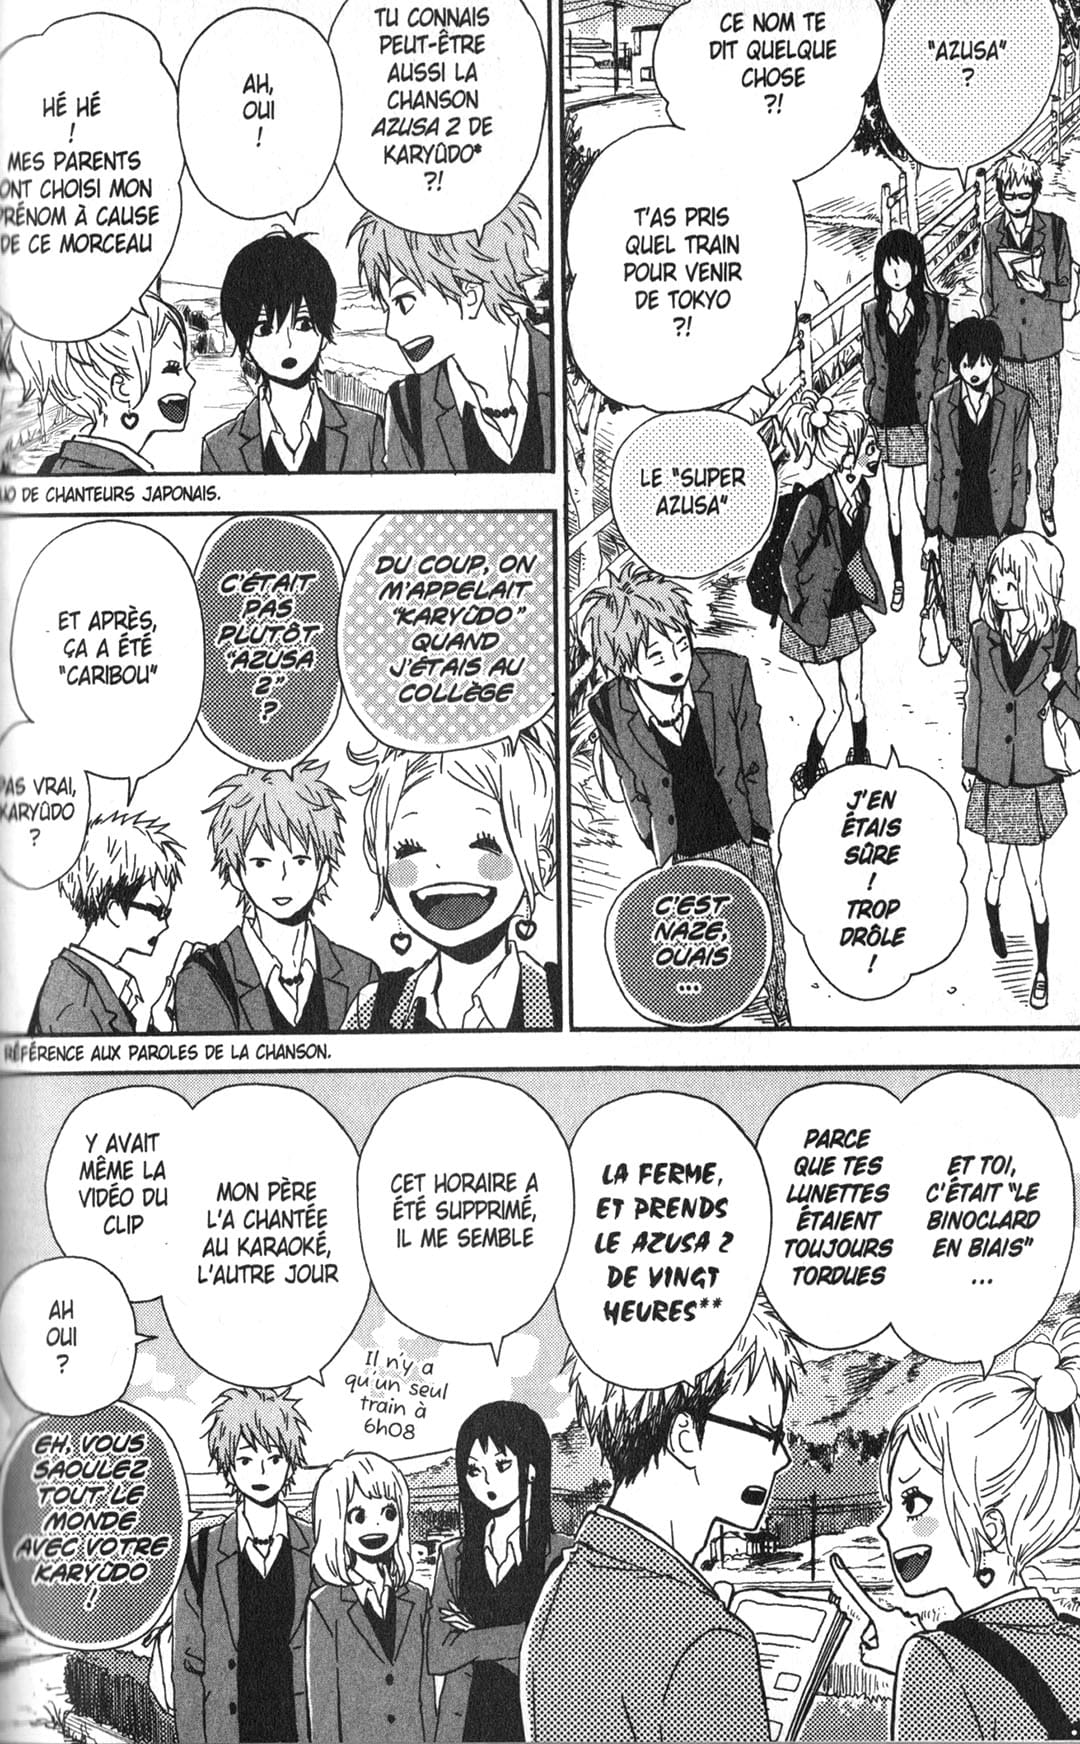 Extrait du manga Orange présentant un exemple de dialogue dense entre de nombreux personnages.